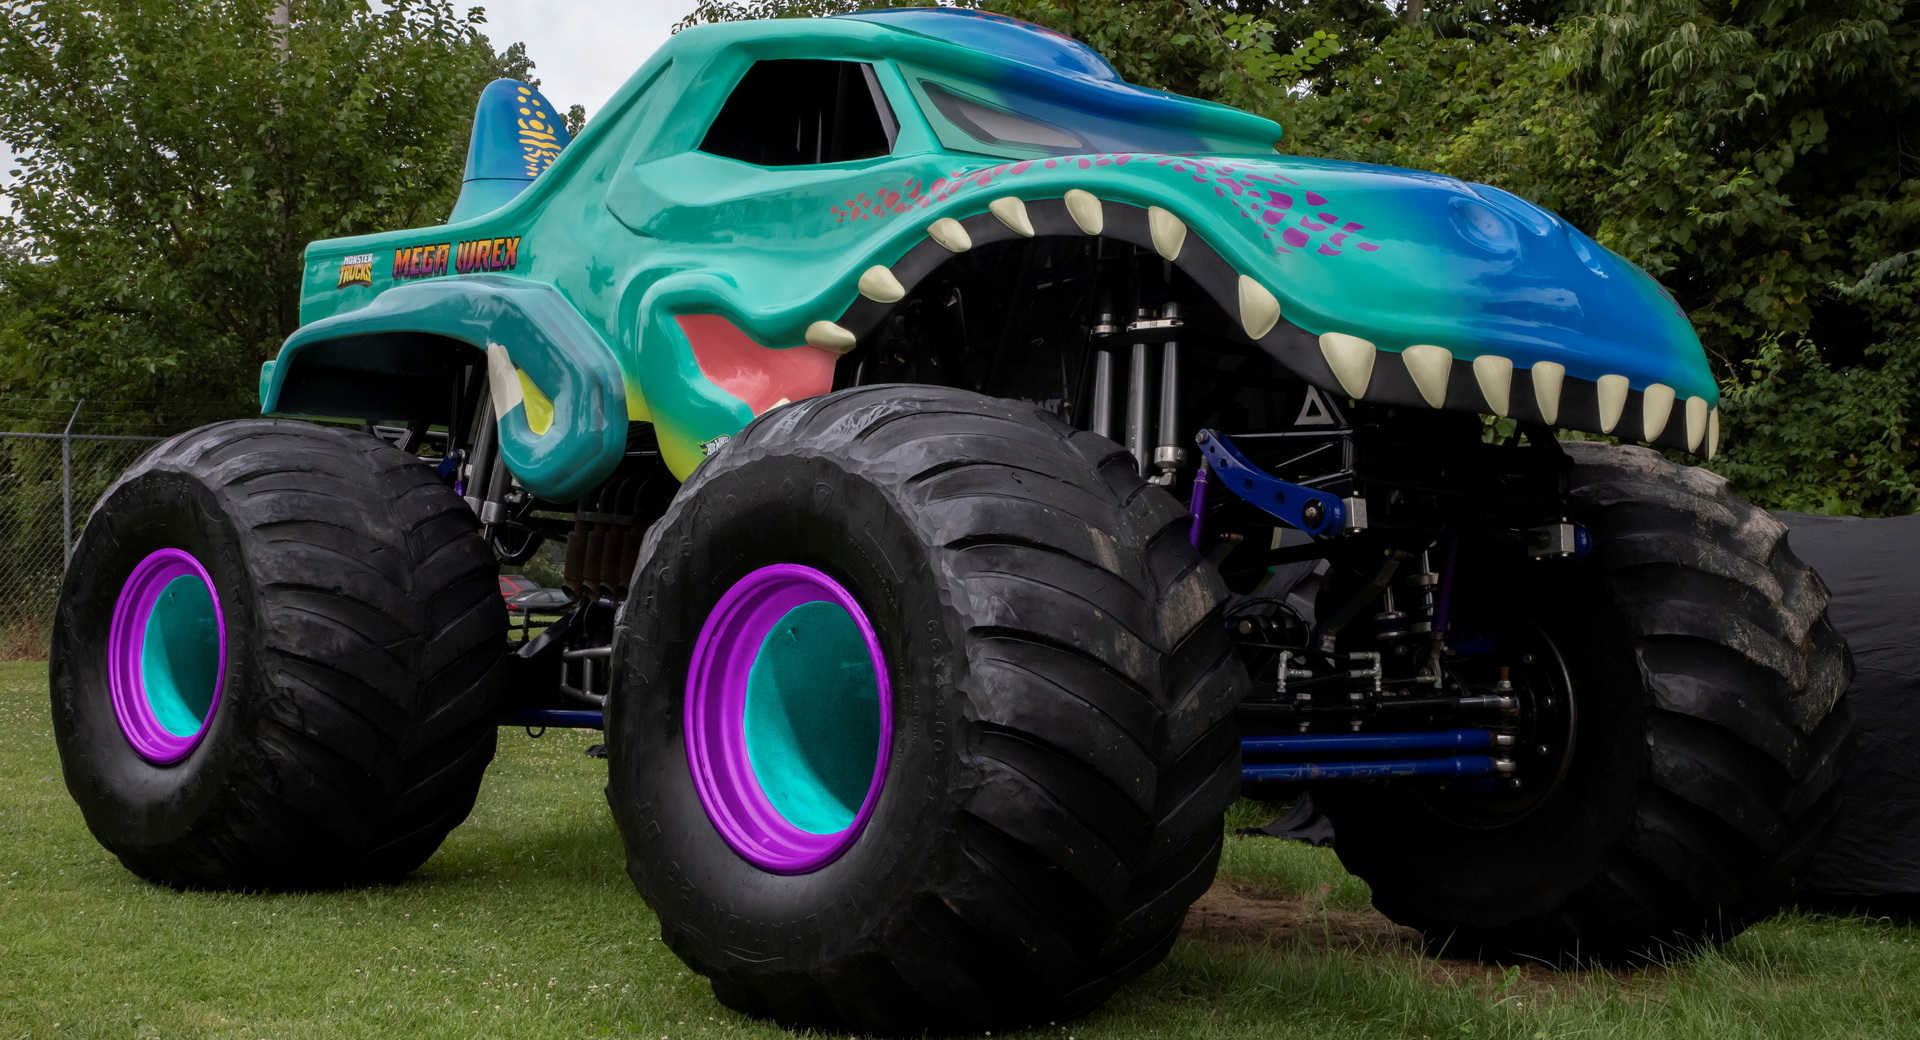 Hot Wheels Monster Trucks LIVE Mega Wrex Diecast Car (2022)